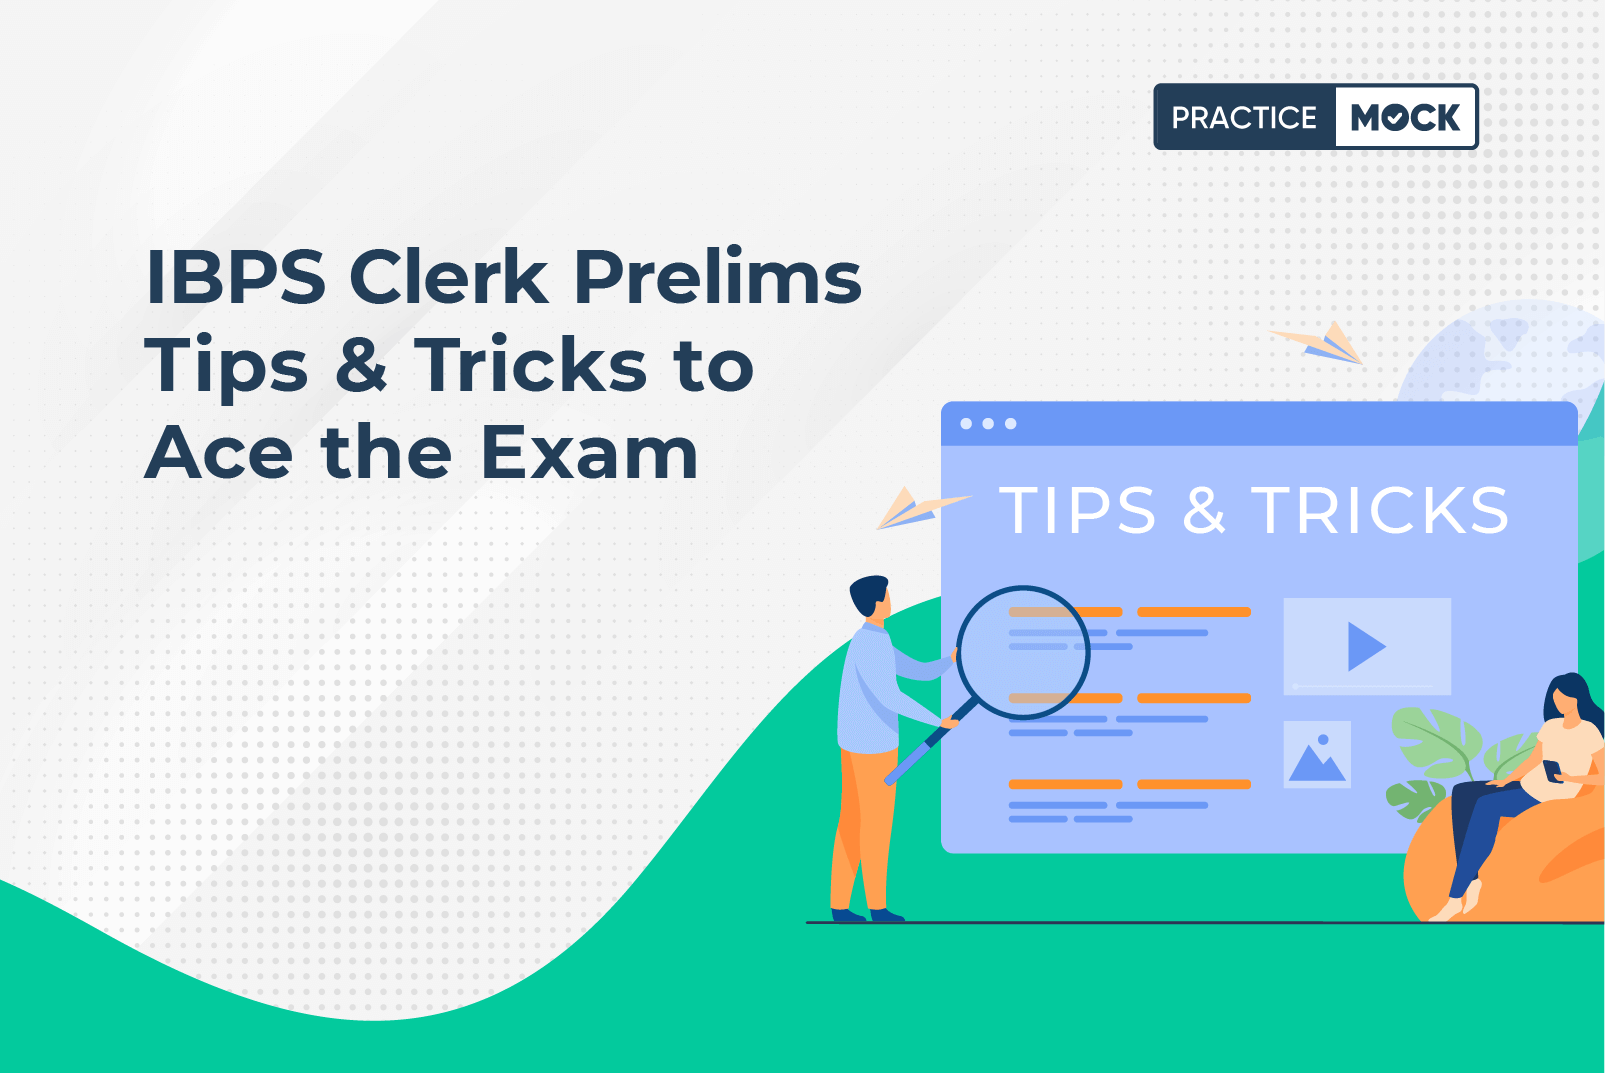 IBPS Clerk Prelims Tips & Tricks